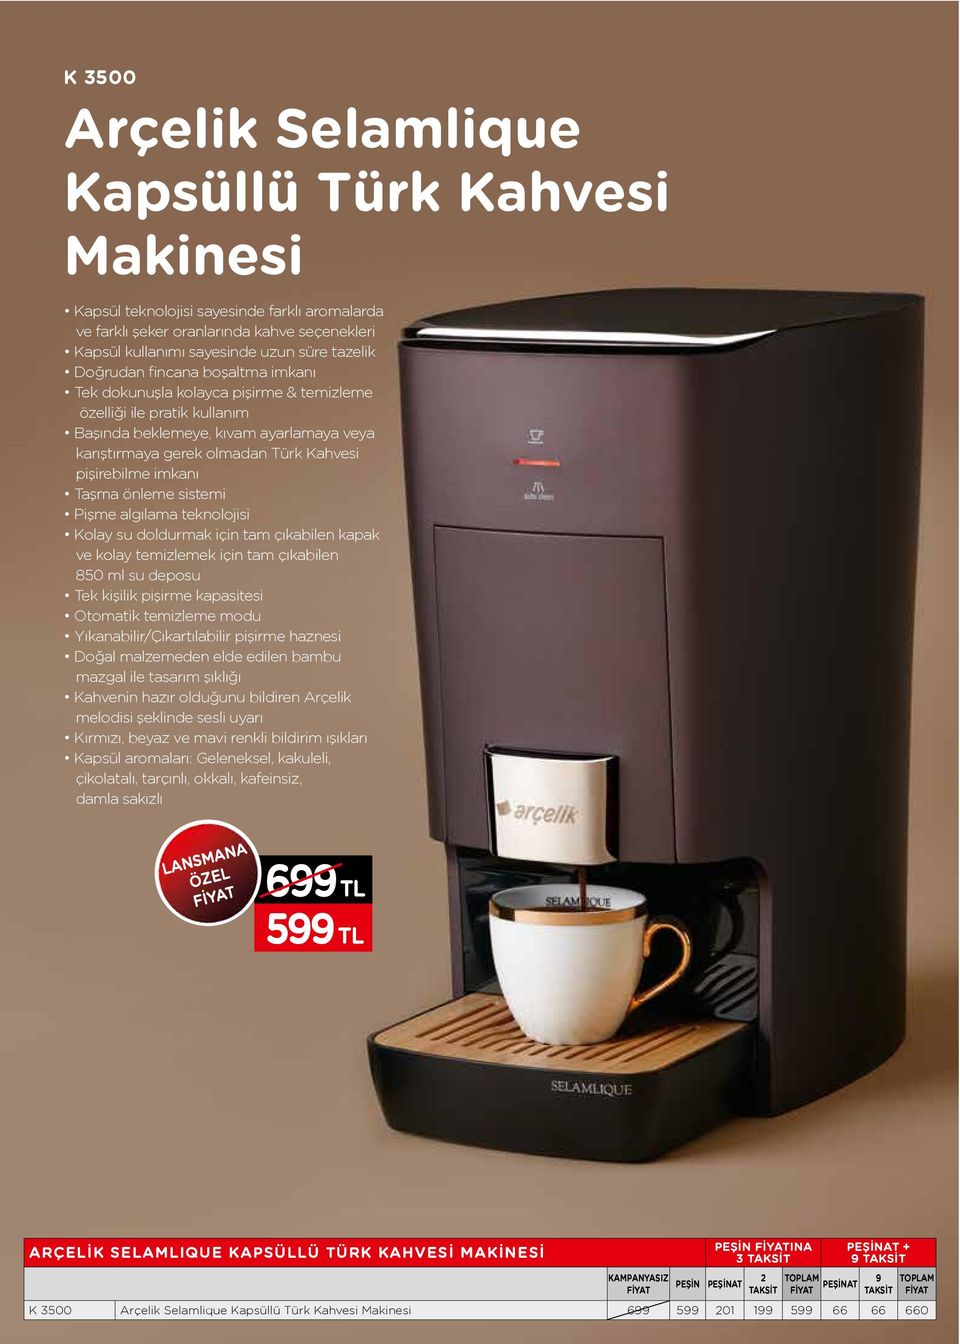 Arçelik Selamlique Kapsüllü Türk Kahvesi Makinesi - PDF Free Download